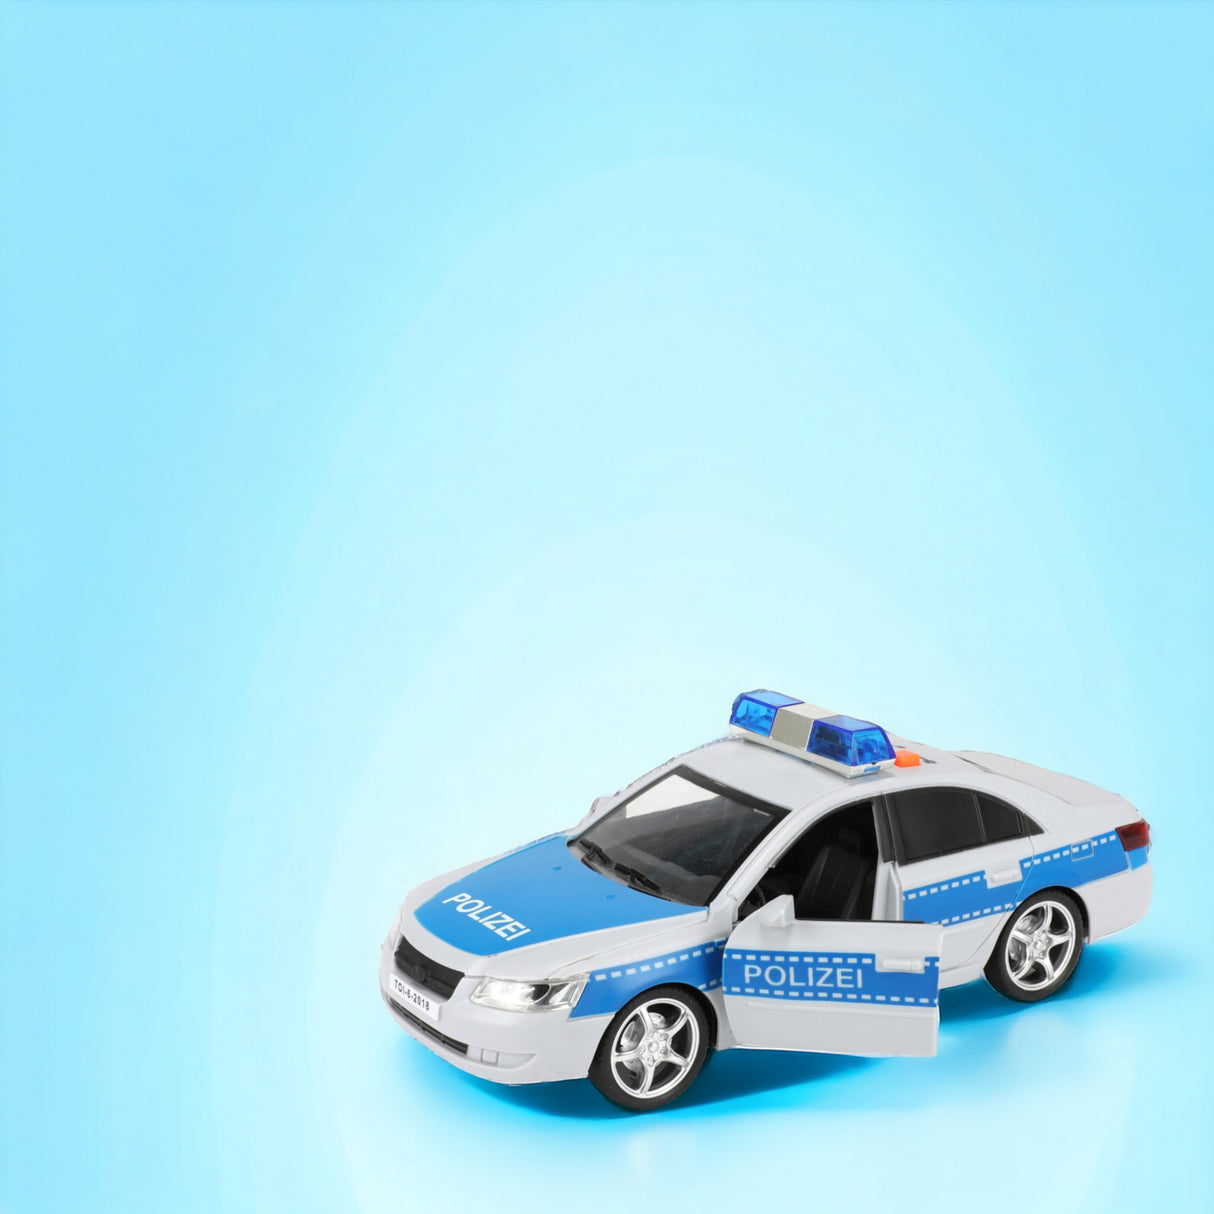 Spielzeug Polizeiauto Polizei Modellfahrzeug mit Friktionsmotor, Licht und Ton